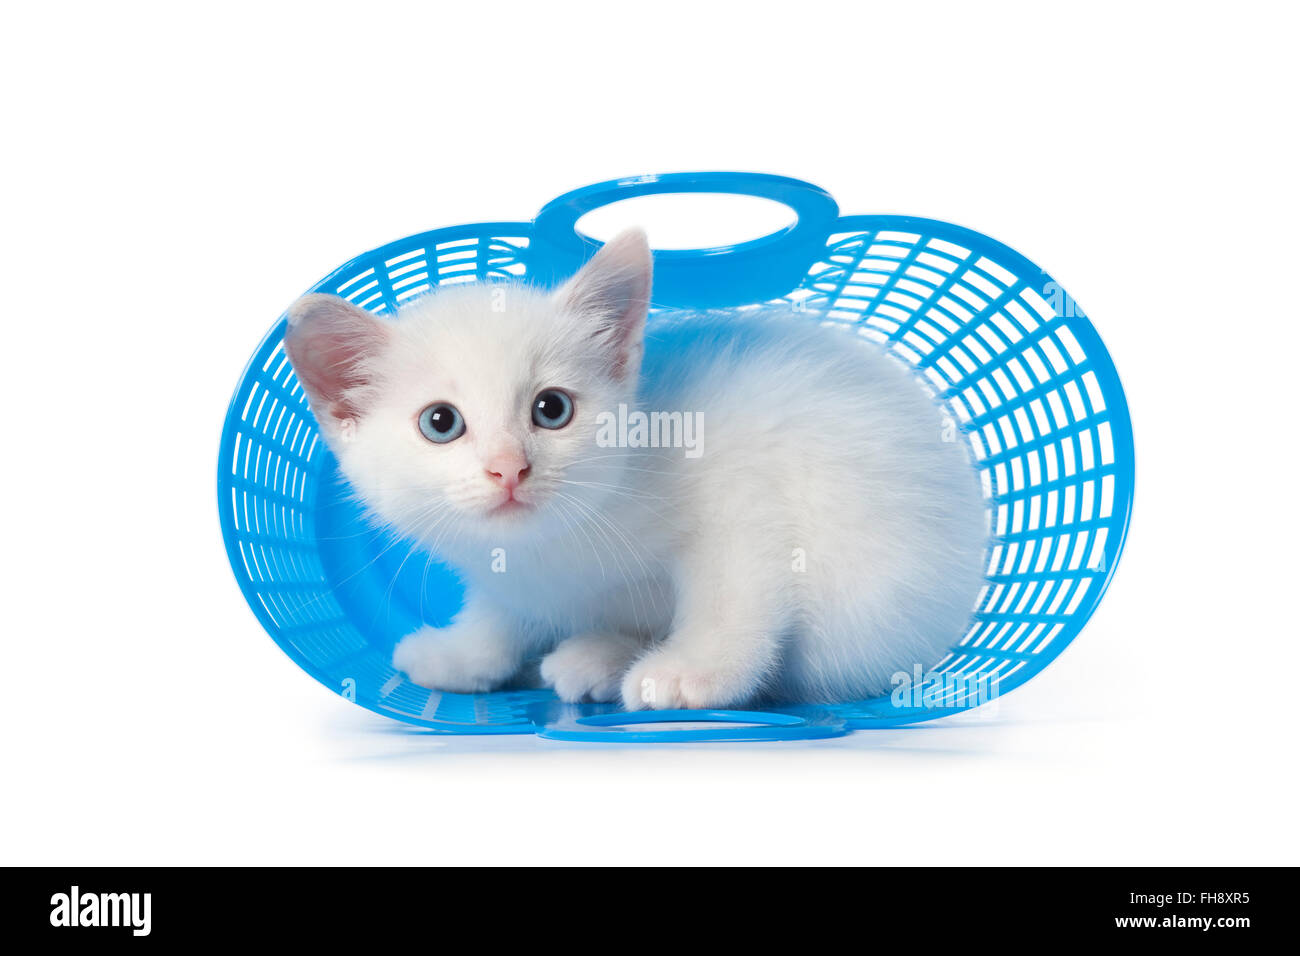 Süße weiße Kätzchen mit blauen Augen, versteckt in einem blauen Kunststoff-Korb auf weißem Hintergrund Stockfoto